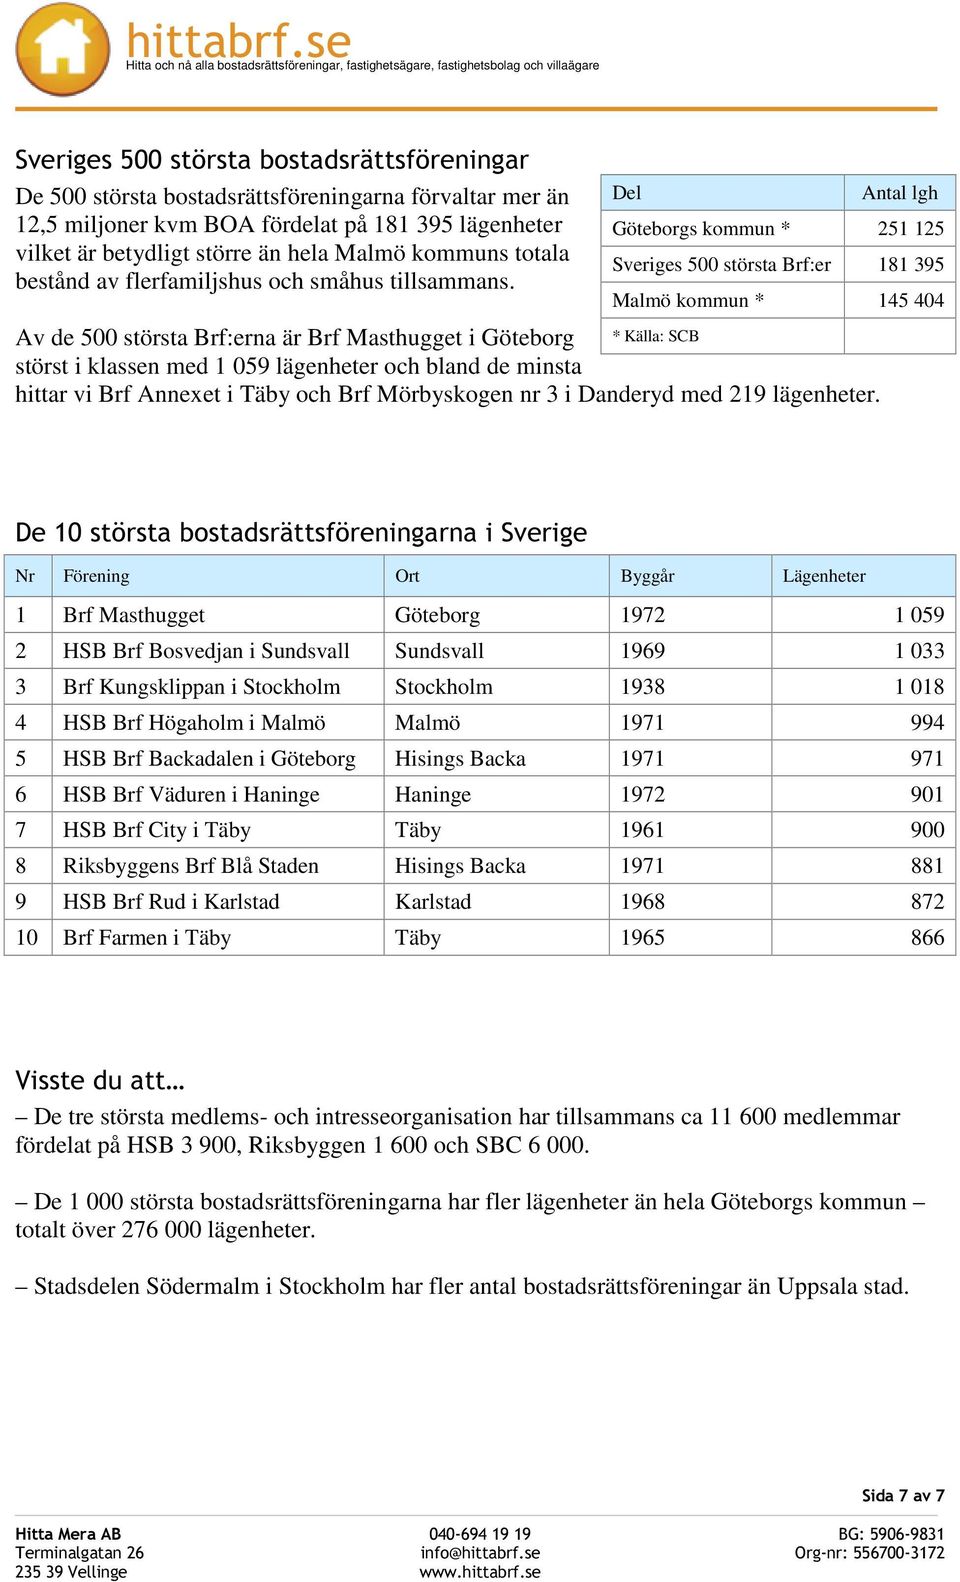 Av de 500 största Brf:erna är Brf Masthugget i Göteborg * Källa: SCB störst i klassen med 1 059 lägenheter och bland de minsta hittar vi Brf Annexet i Täby och Brf Mörbyskogen nr 3 i Danderyd med 219